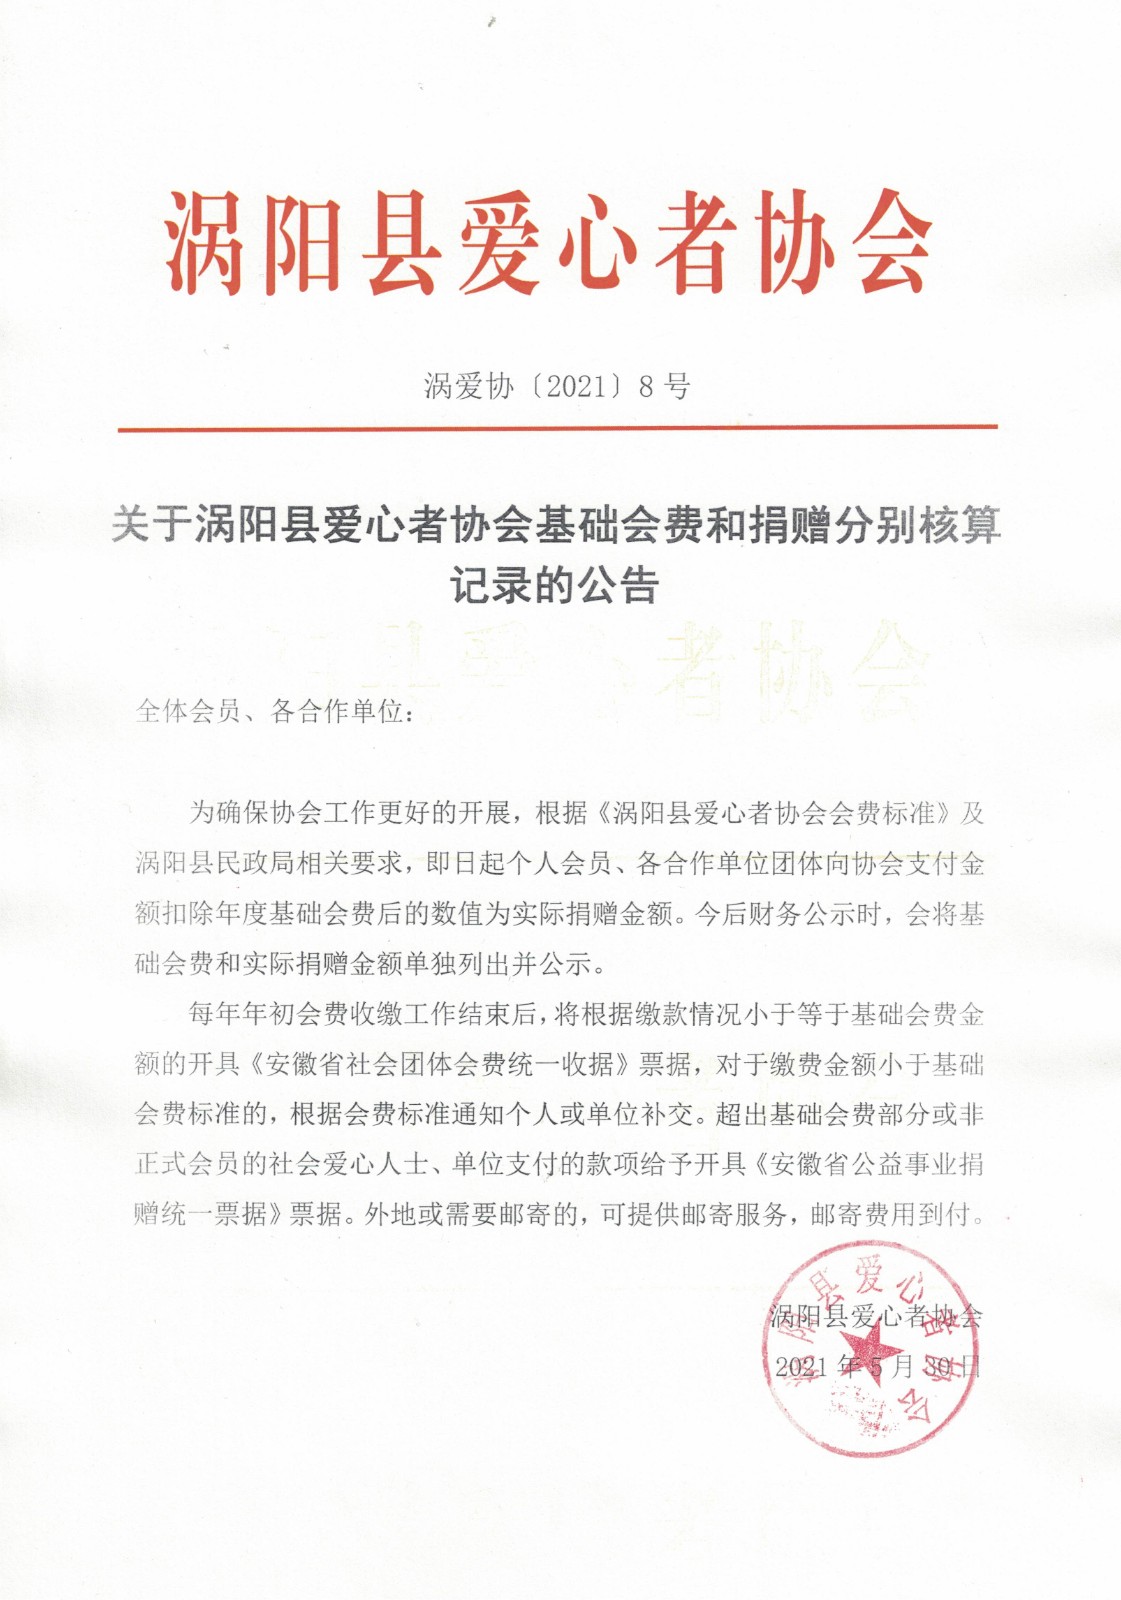 关于涡阳县爱心者协会基础会费和捐赠分别核算记录的公告.jpg